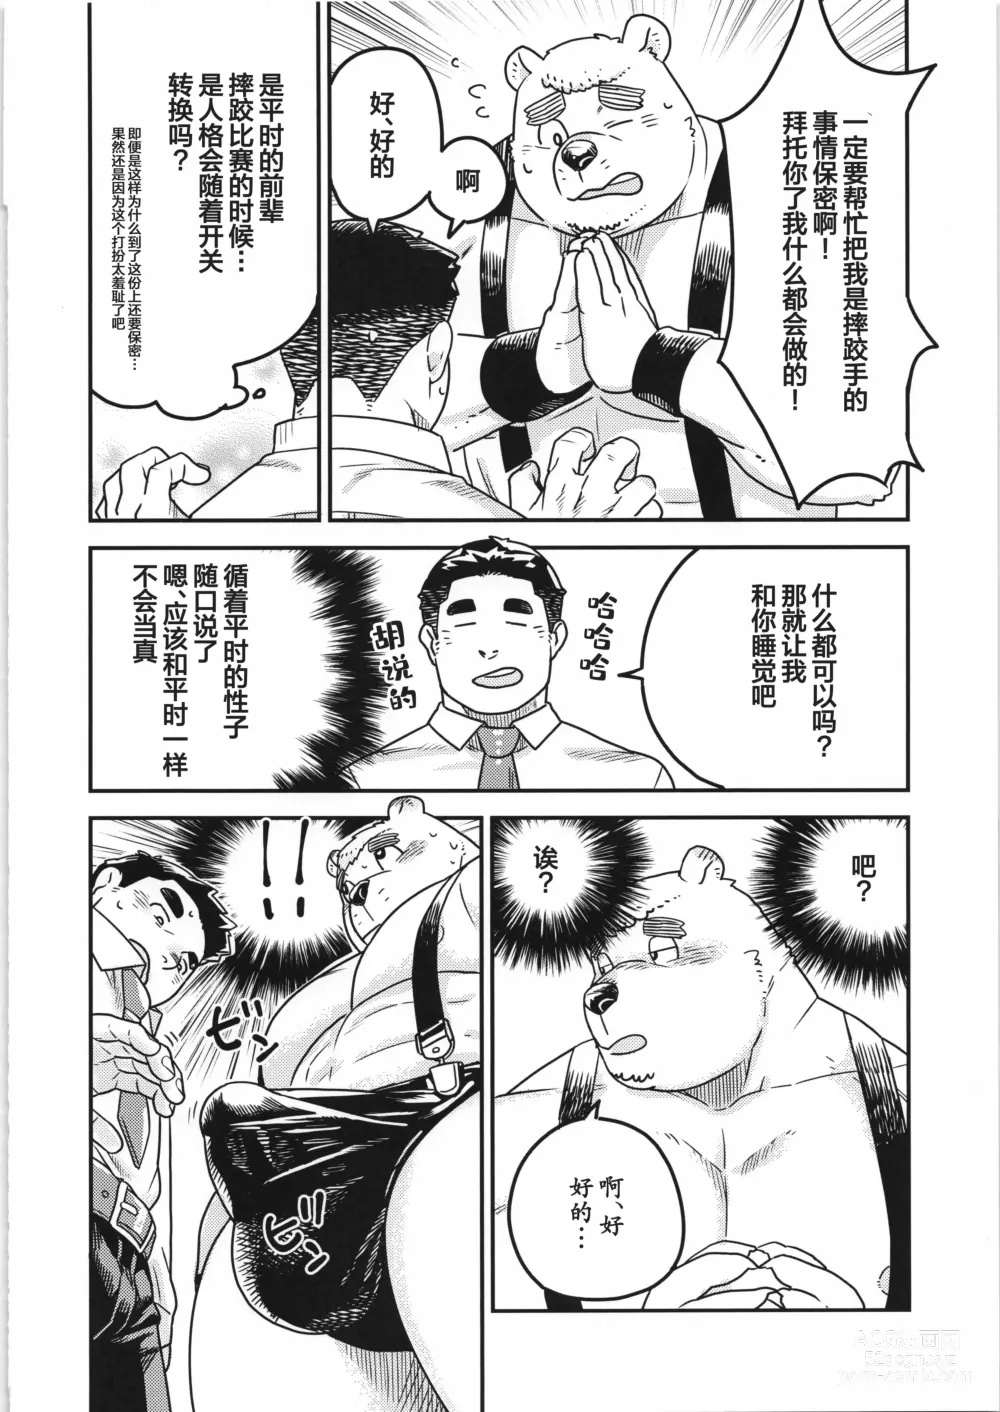 Page 13 of manga CHOGOKIN-004